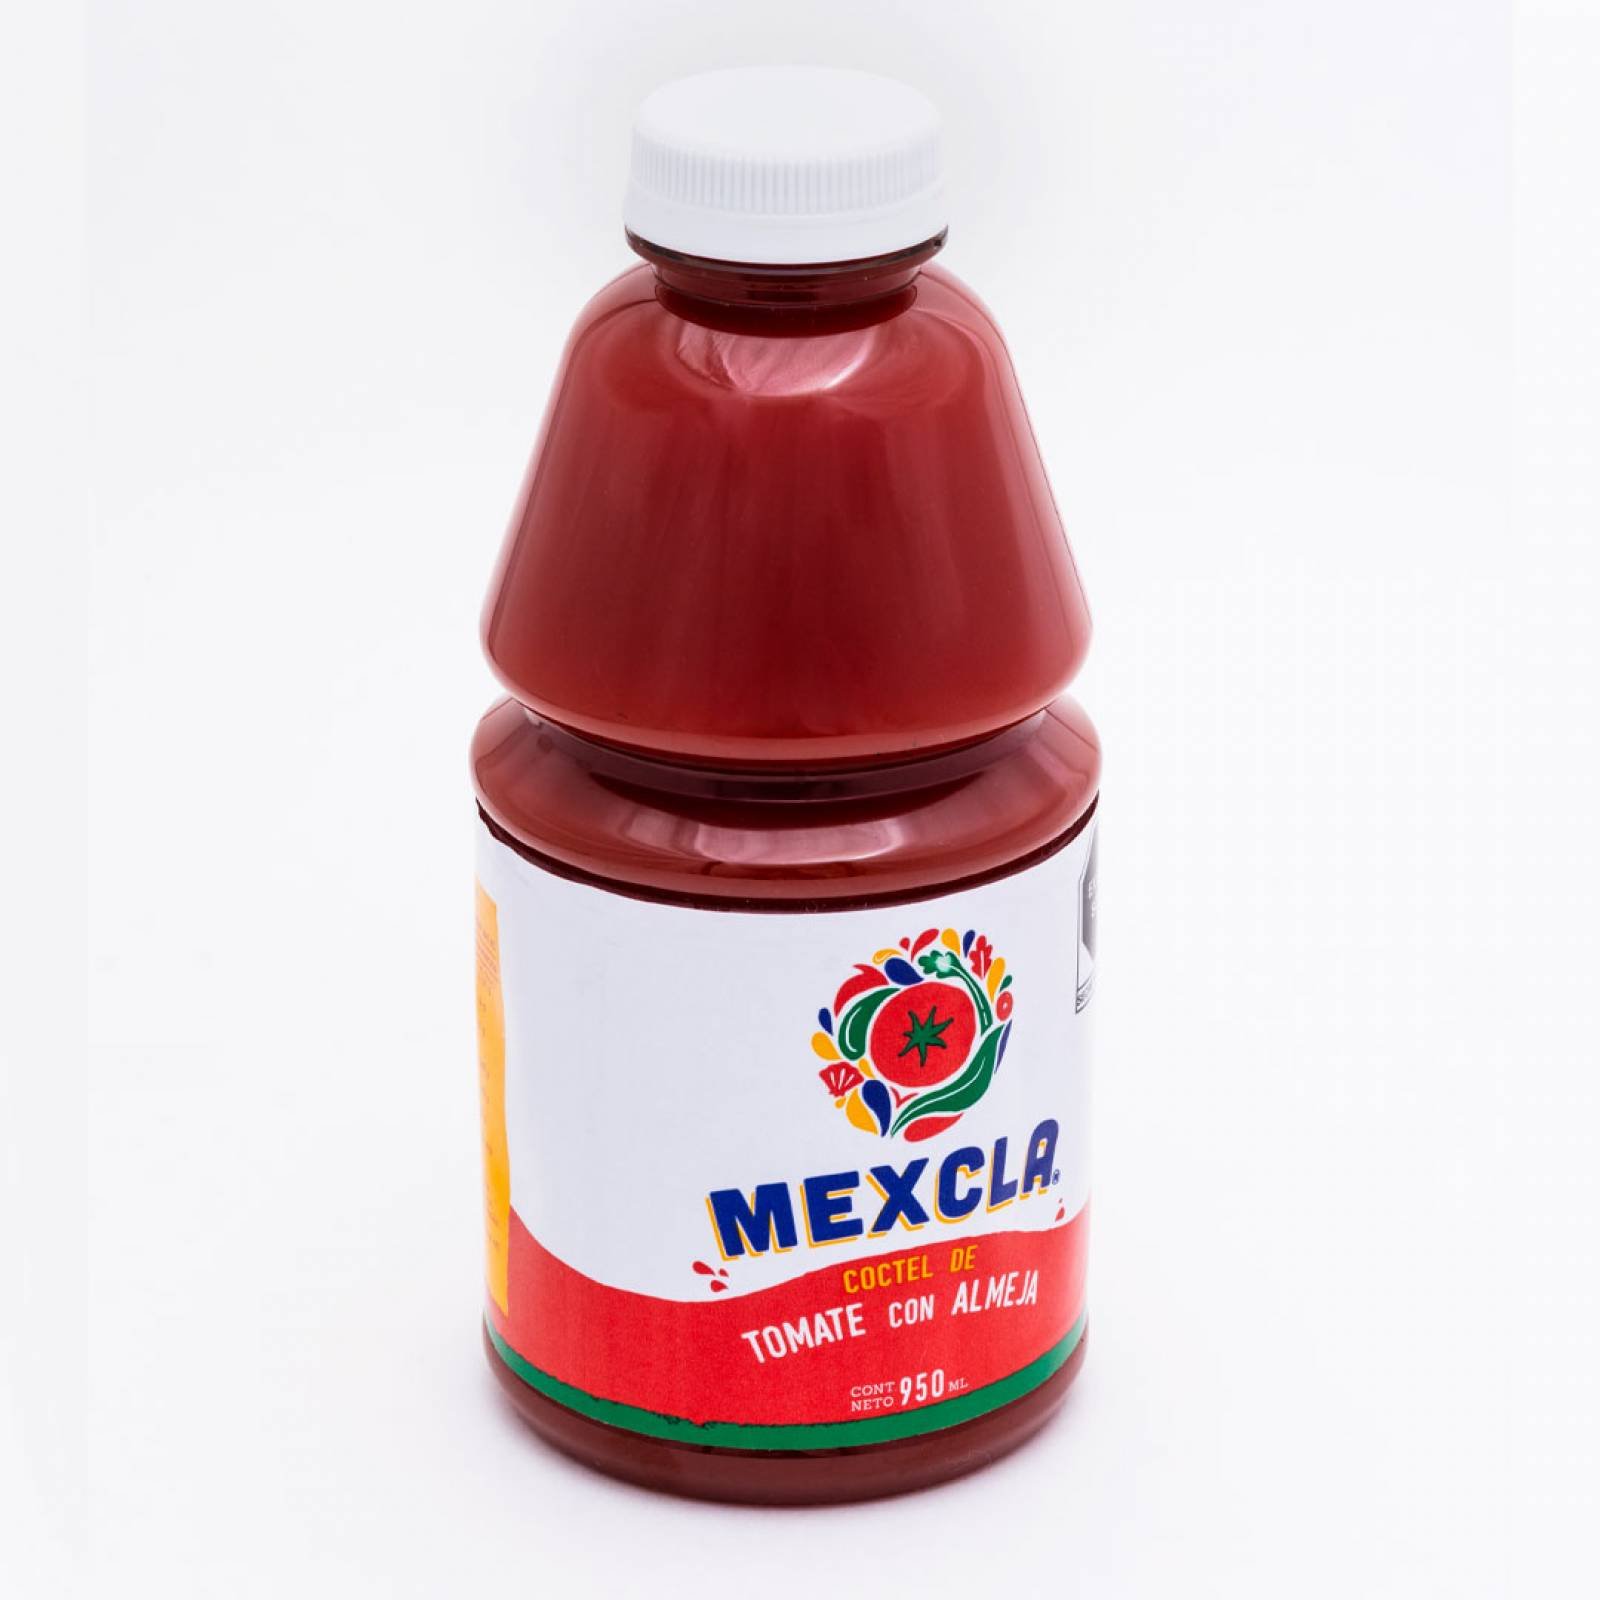 Jugo de tomate y almeja Mexcla de 950 ml  caja 12 piezas